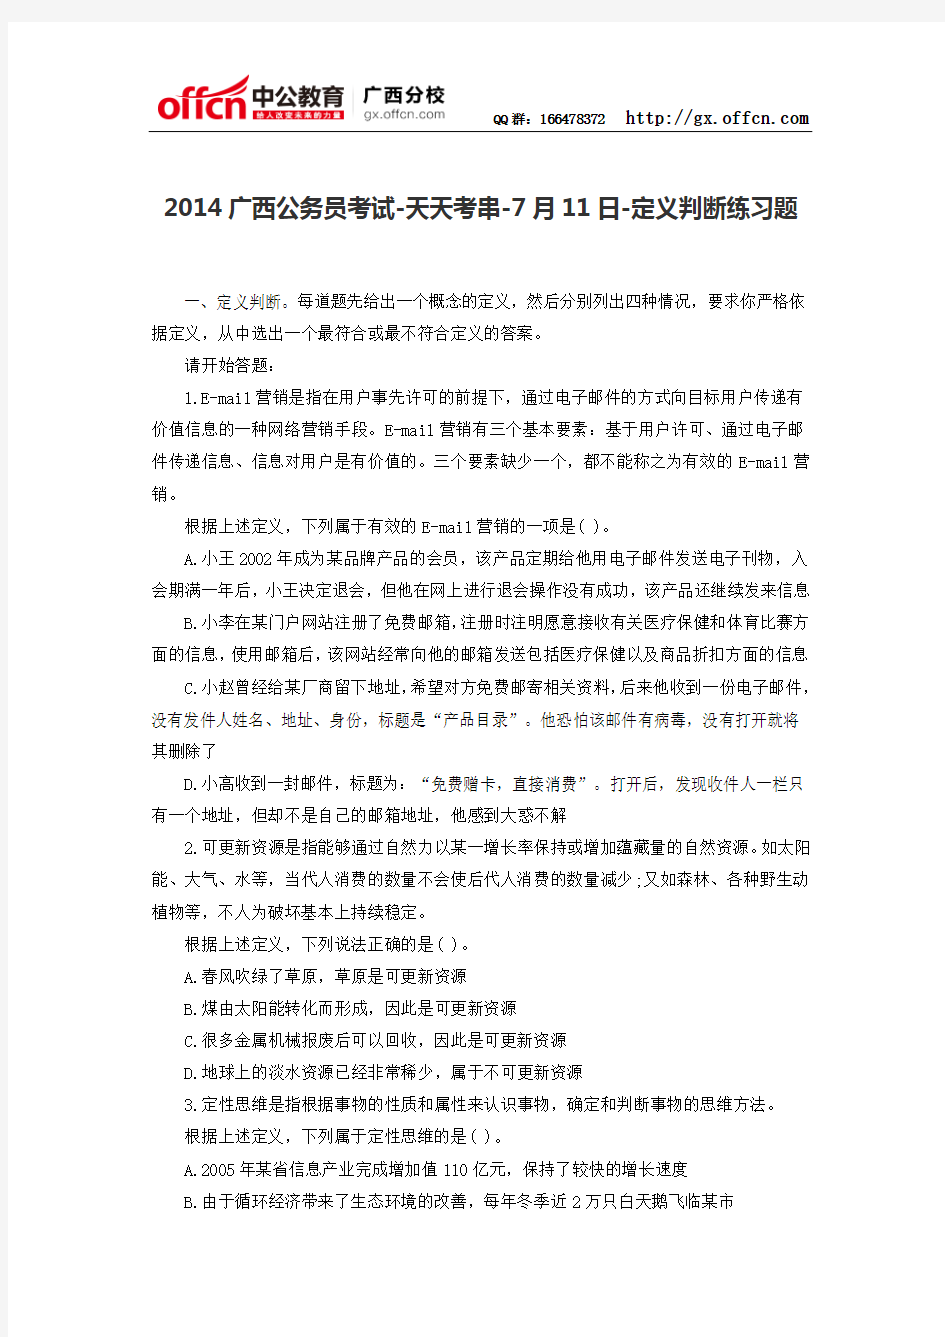 2014广西公务员考试-天天考串-7月11日-定义判断练习题